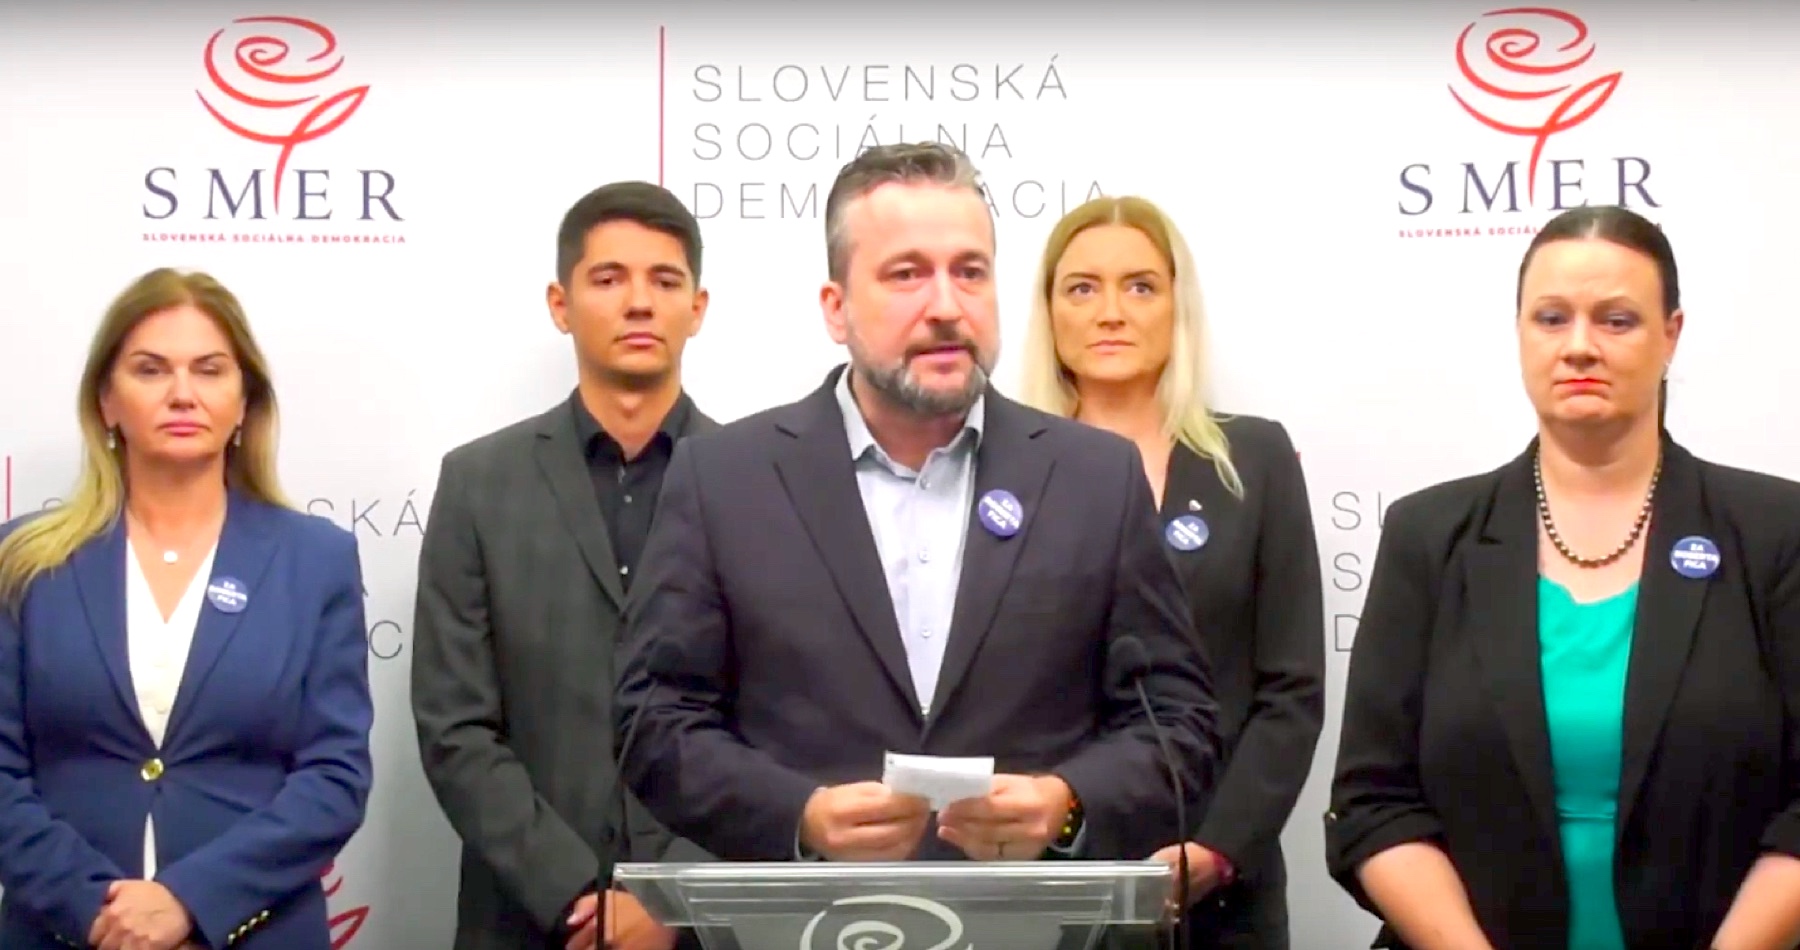 VIDEO: „Významný krok smerom k ochrane mieru a národnej suverenity,“ komentovali novozvolení europoslanci za Smer výsledok volieb do Európskeho parlamentu na Slovensku a v štátoch EÚ, ktorý znamenal studenú sprchu pre vojnových štváčov, eurofederalistov a presadzovateľov globalistickej korporátnej zelenej agendy